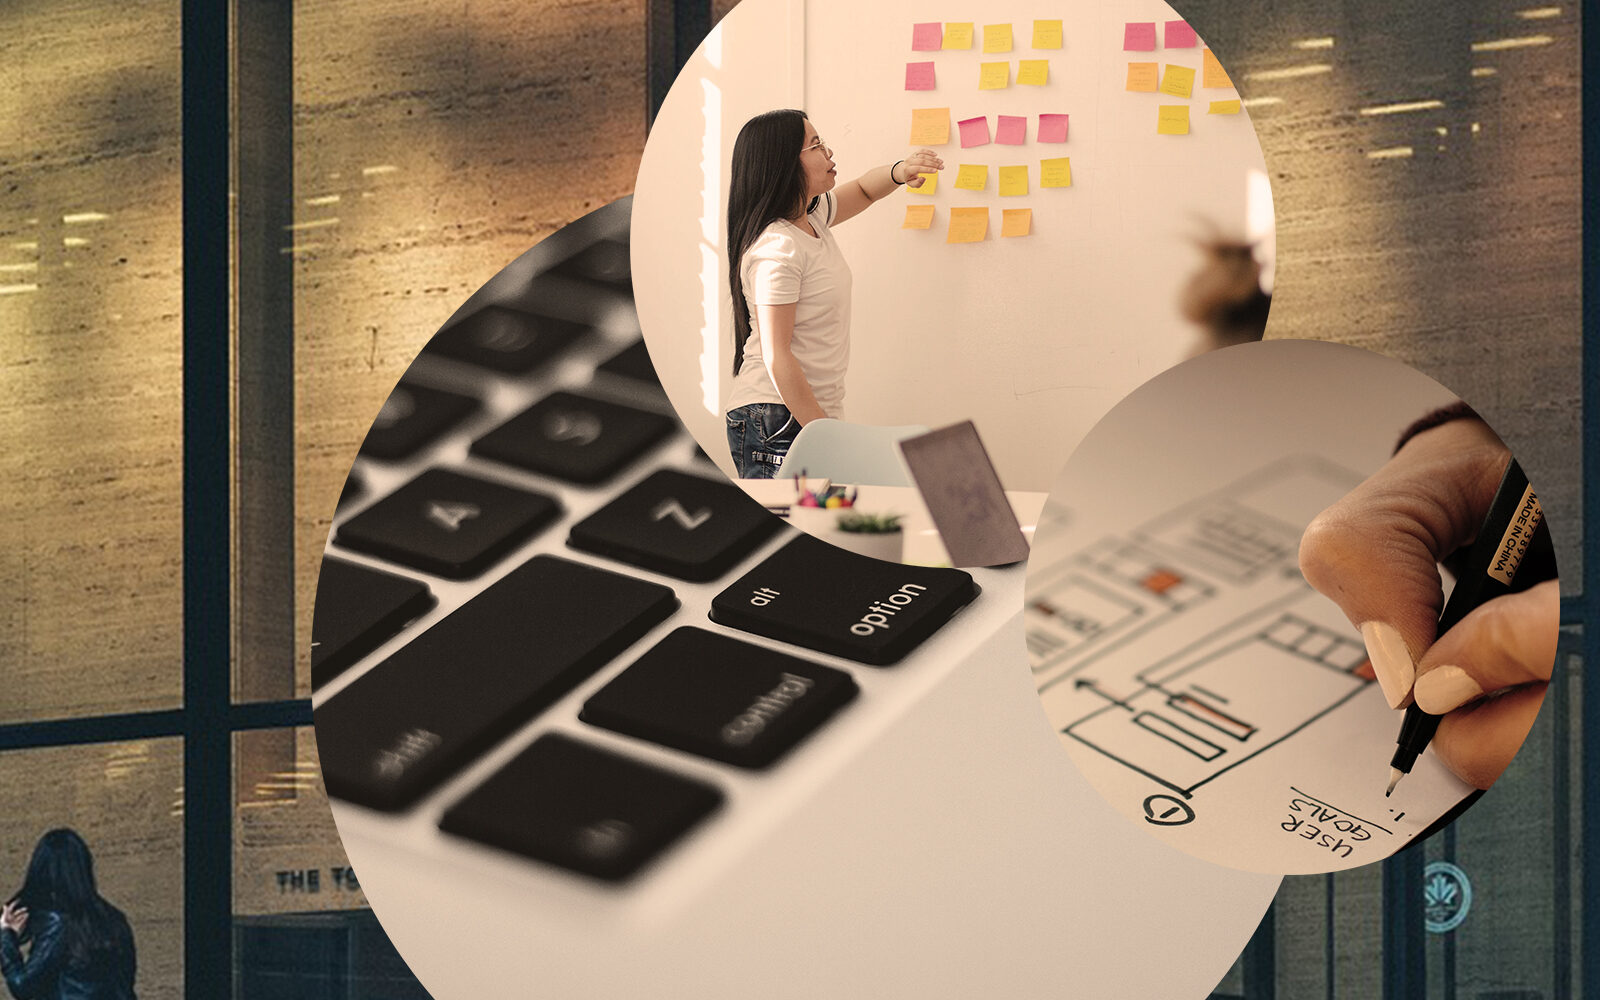 Bild einer Laptop-Tastatur, einer Frau, die vor einem Whiteboard mit bunten Post-Its steht, sowie die Zeichnung einer Projektplanung, Bild zum Blogbeitrag für ein erfolgreiches Customer Relationship Management (CRM)